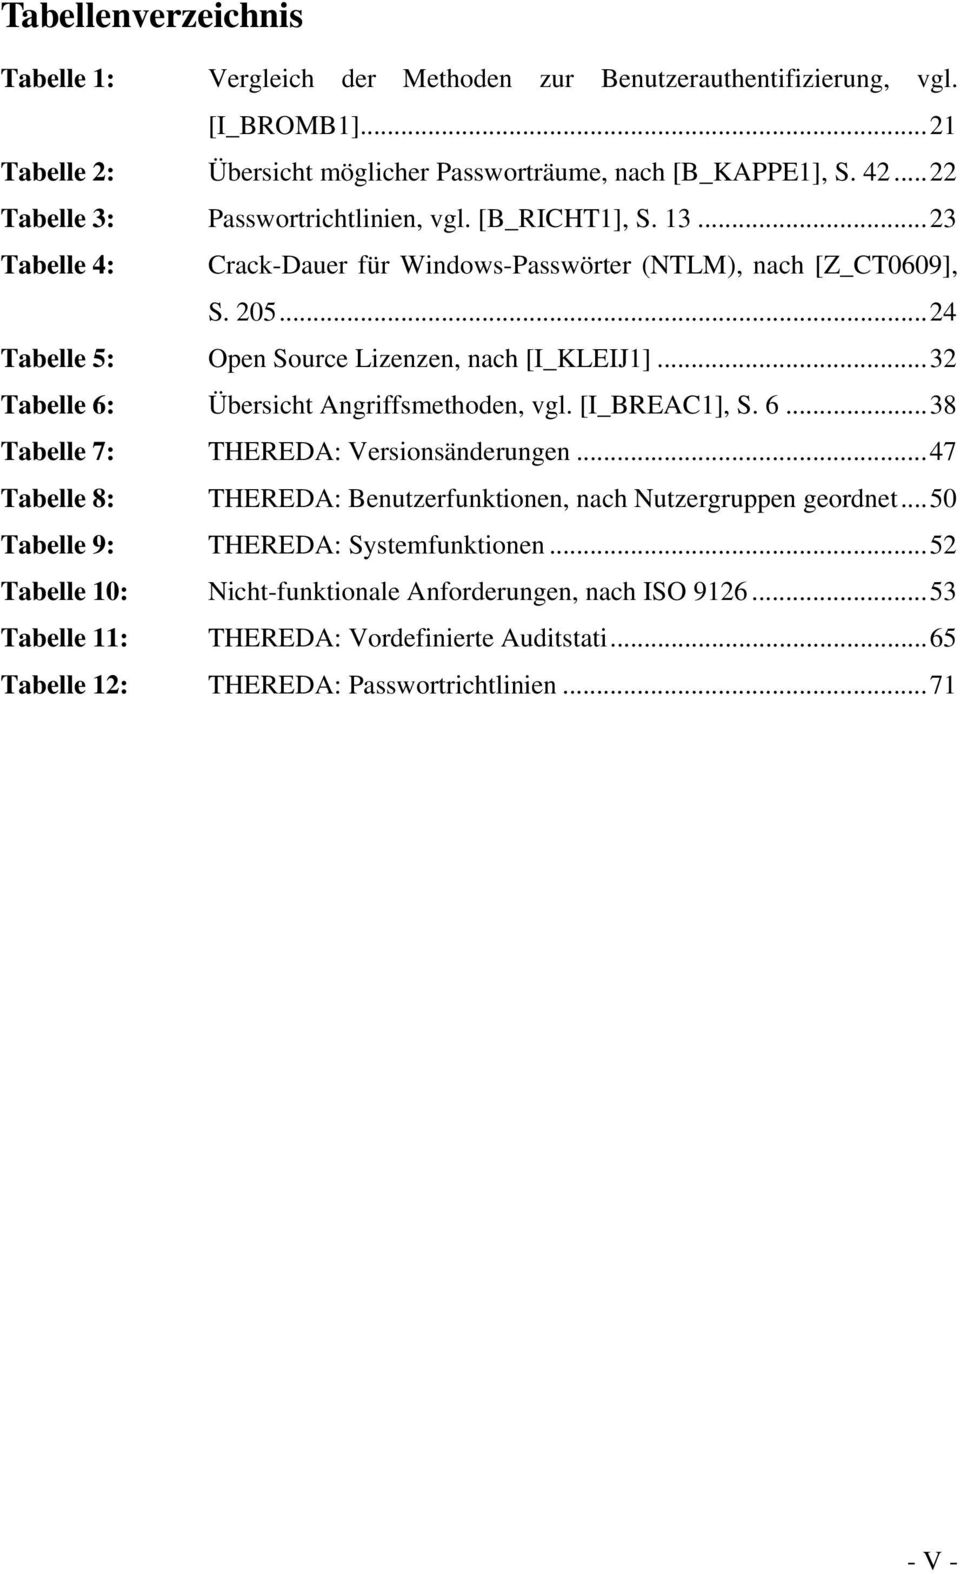 .. 24 Tabelle 5: Open Source Lizenzen, nach [I_KLEIJ1]... 32 Tabelle 6: Übersicht Angriffsmethoden, vgl. [I_BREAC1], S. 6... 38 Tabelle 7: THEREDA: Versionsänderungen.